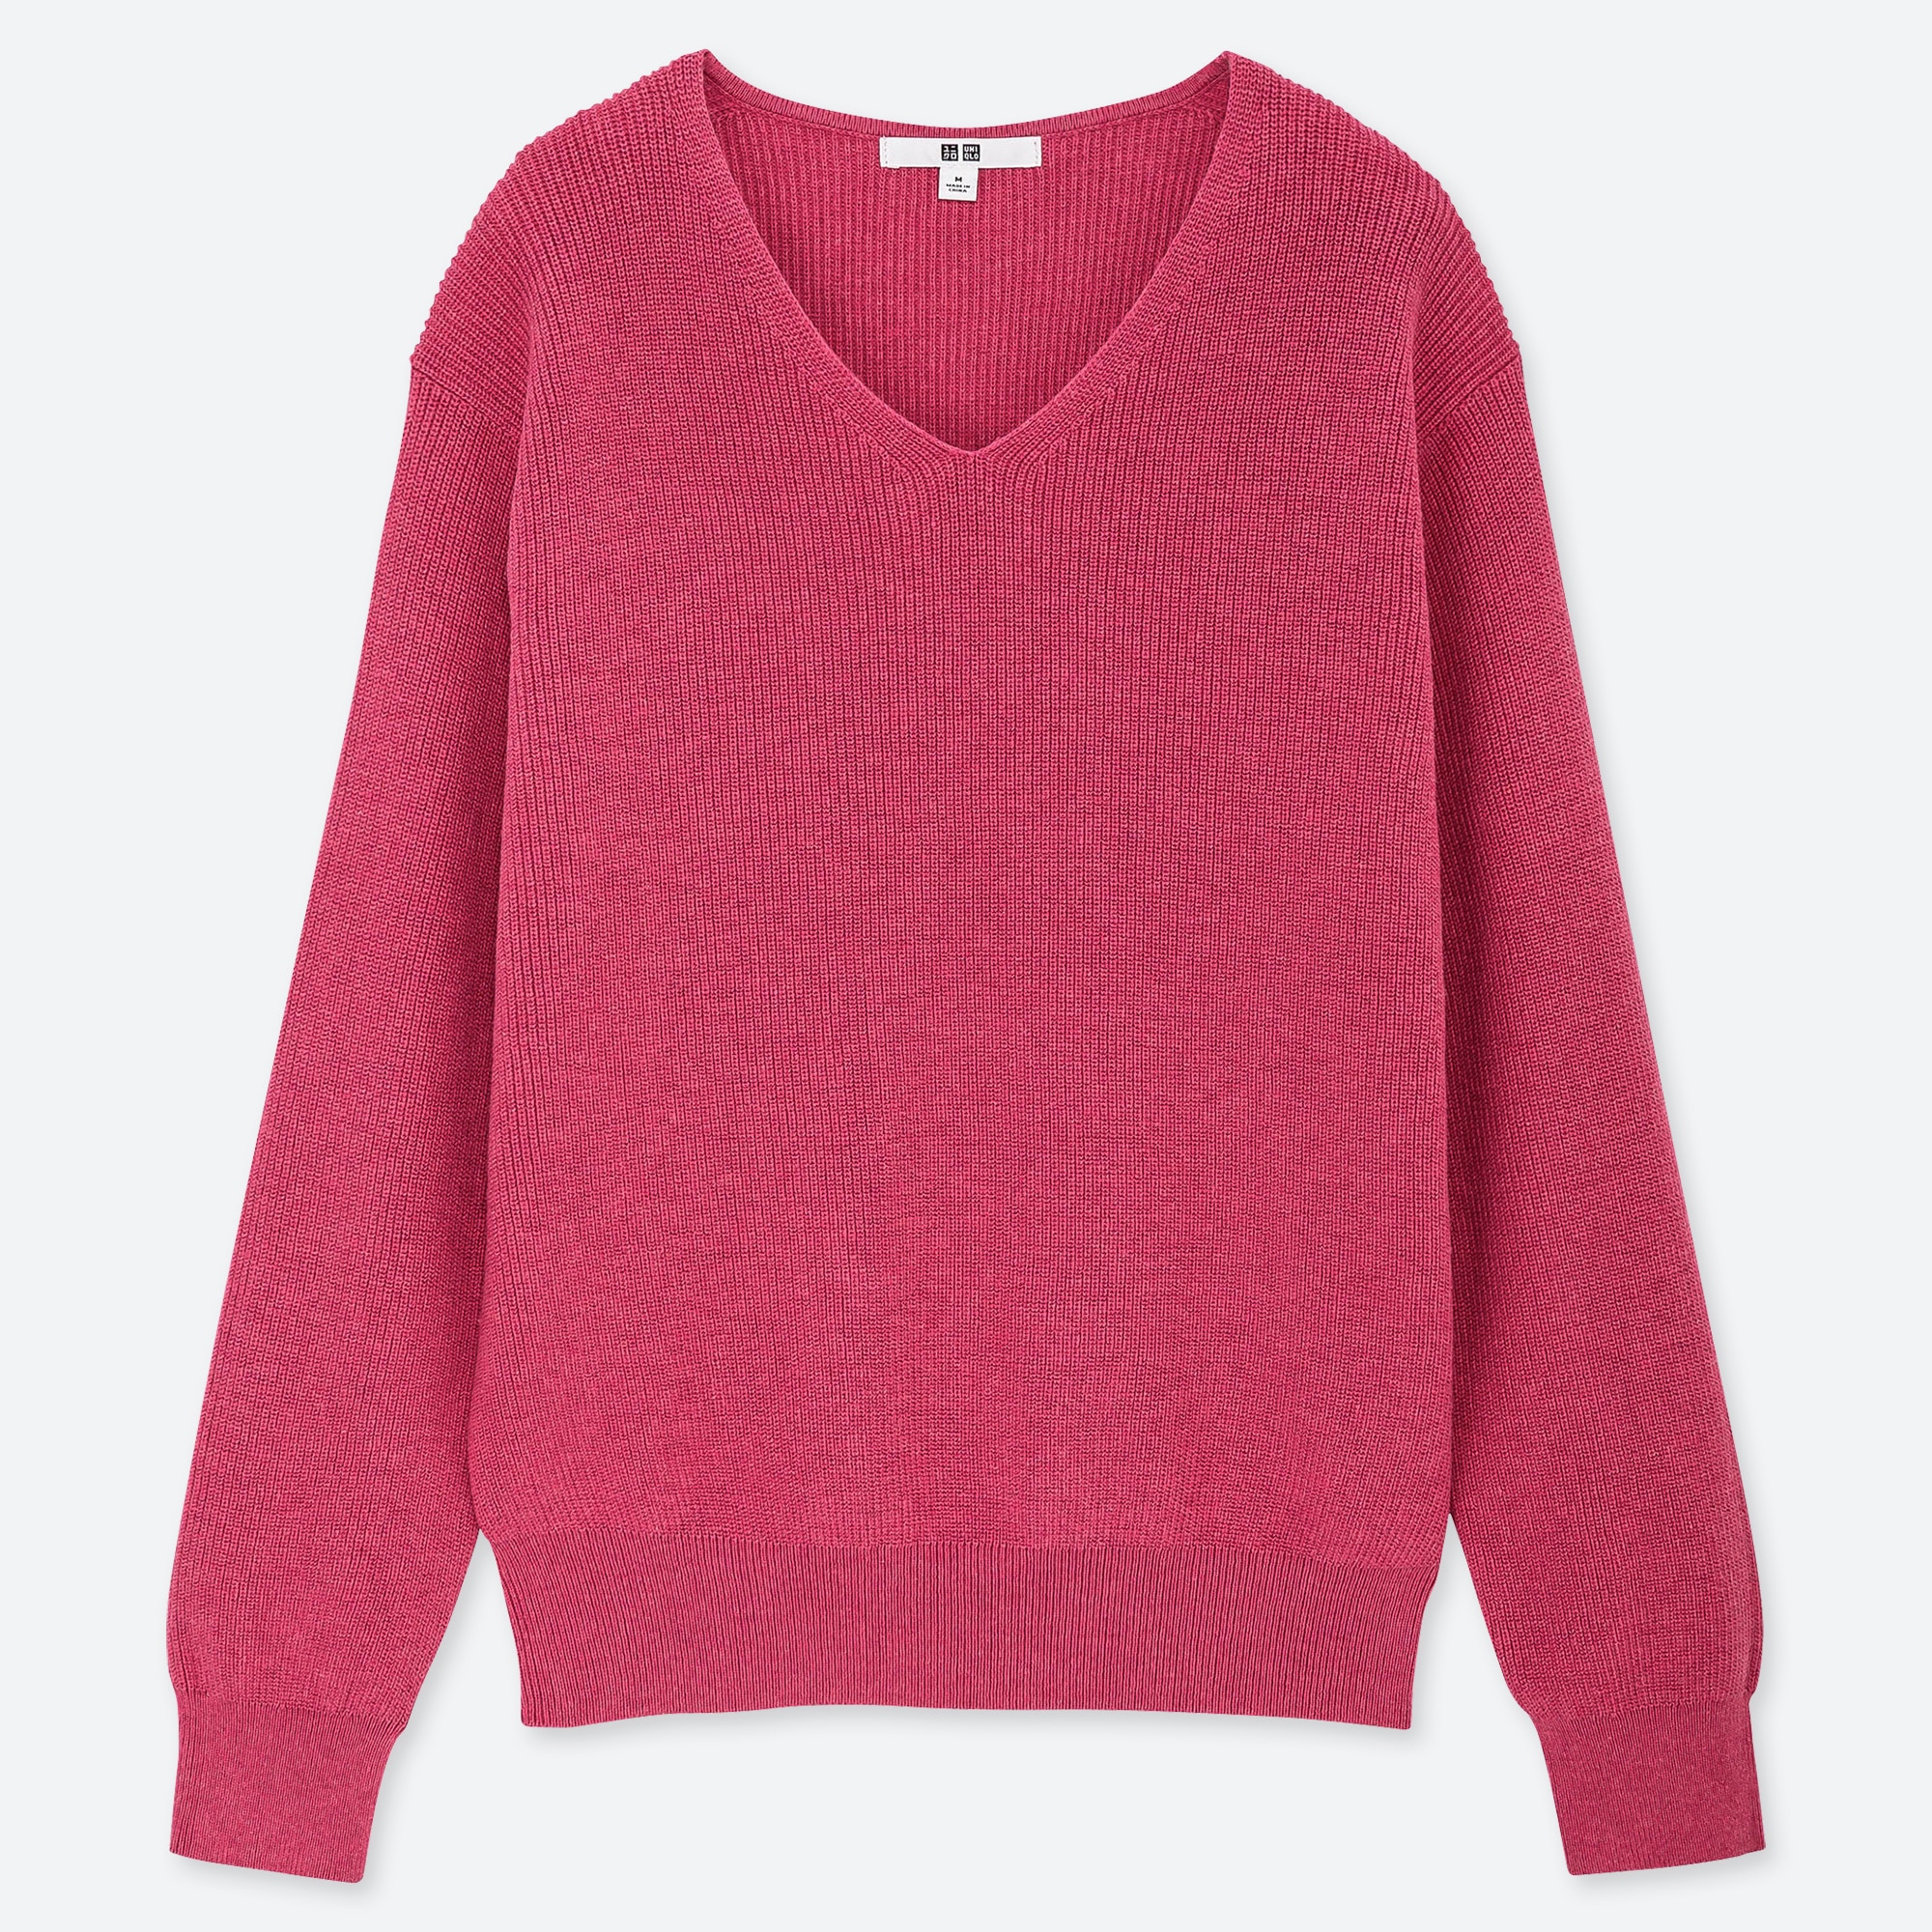 pink v neck sweater